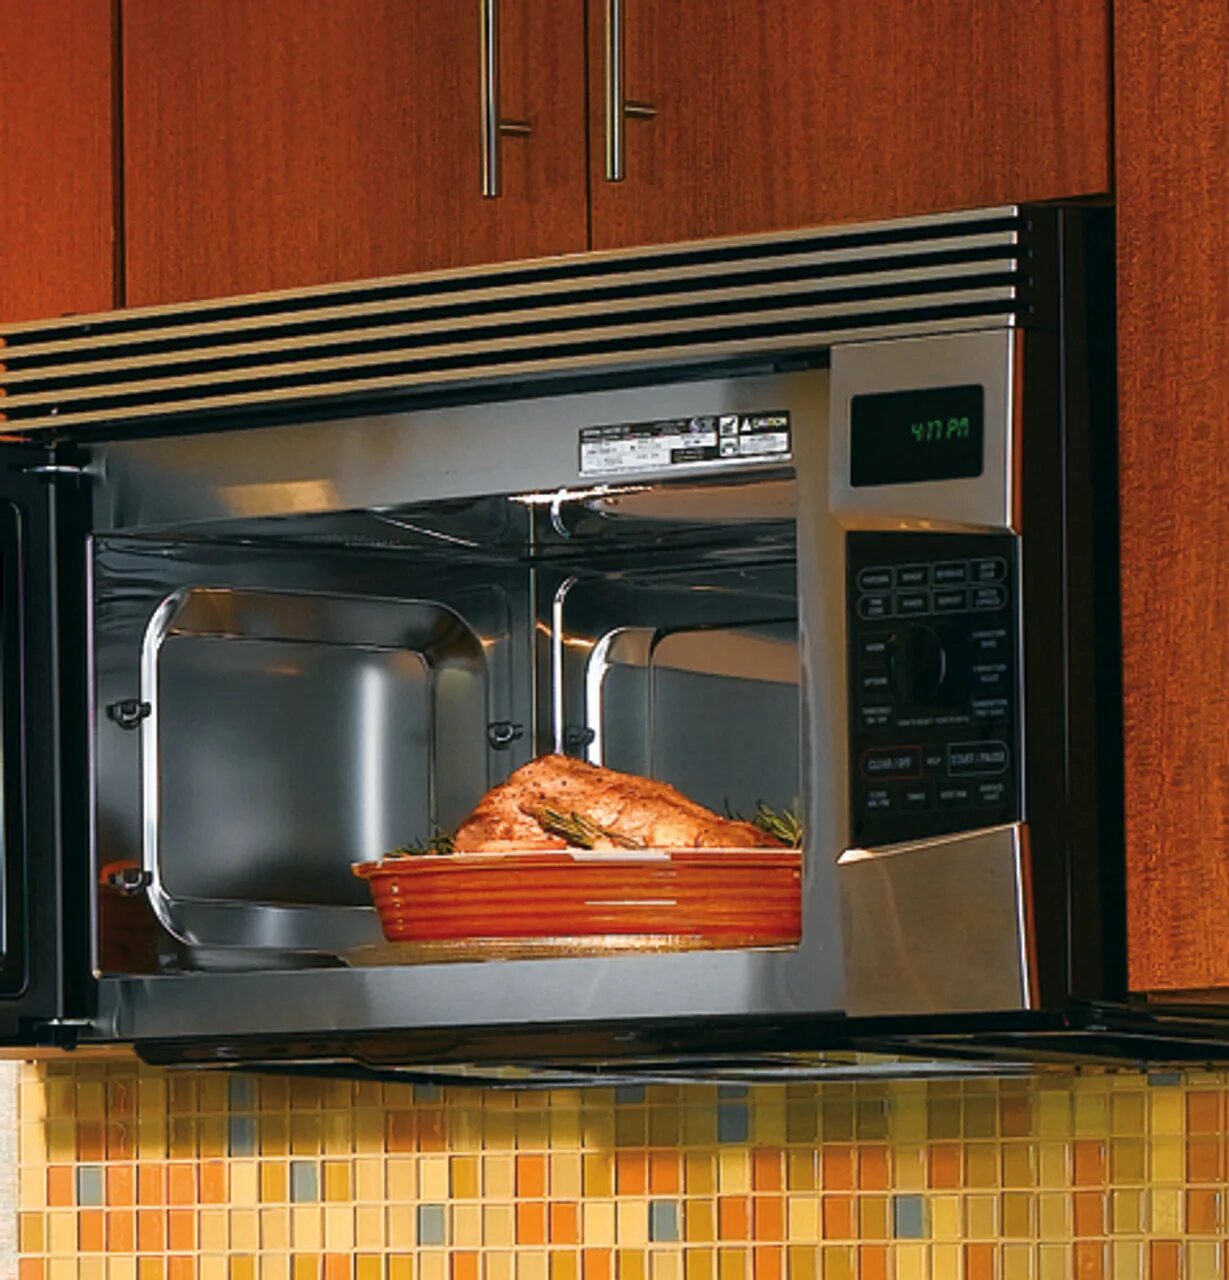 Мини печь на кухне. Встраиваемая мини печь. Мини печь встроенная в кухню. Микроволновая печь с вытяжкой.